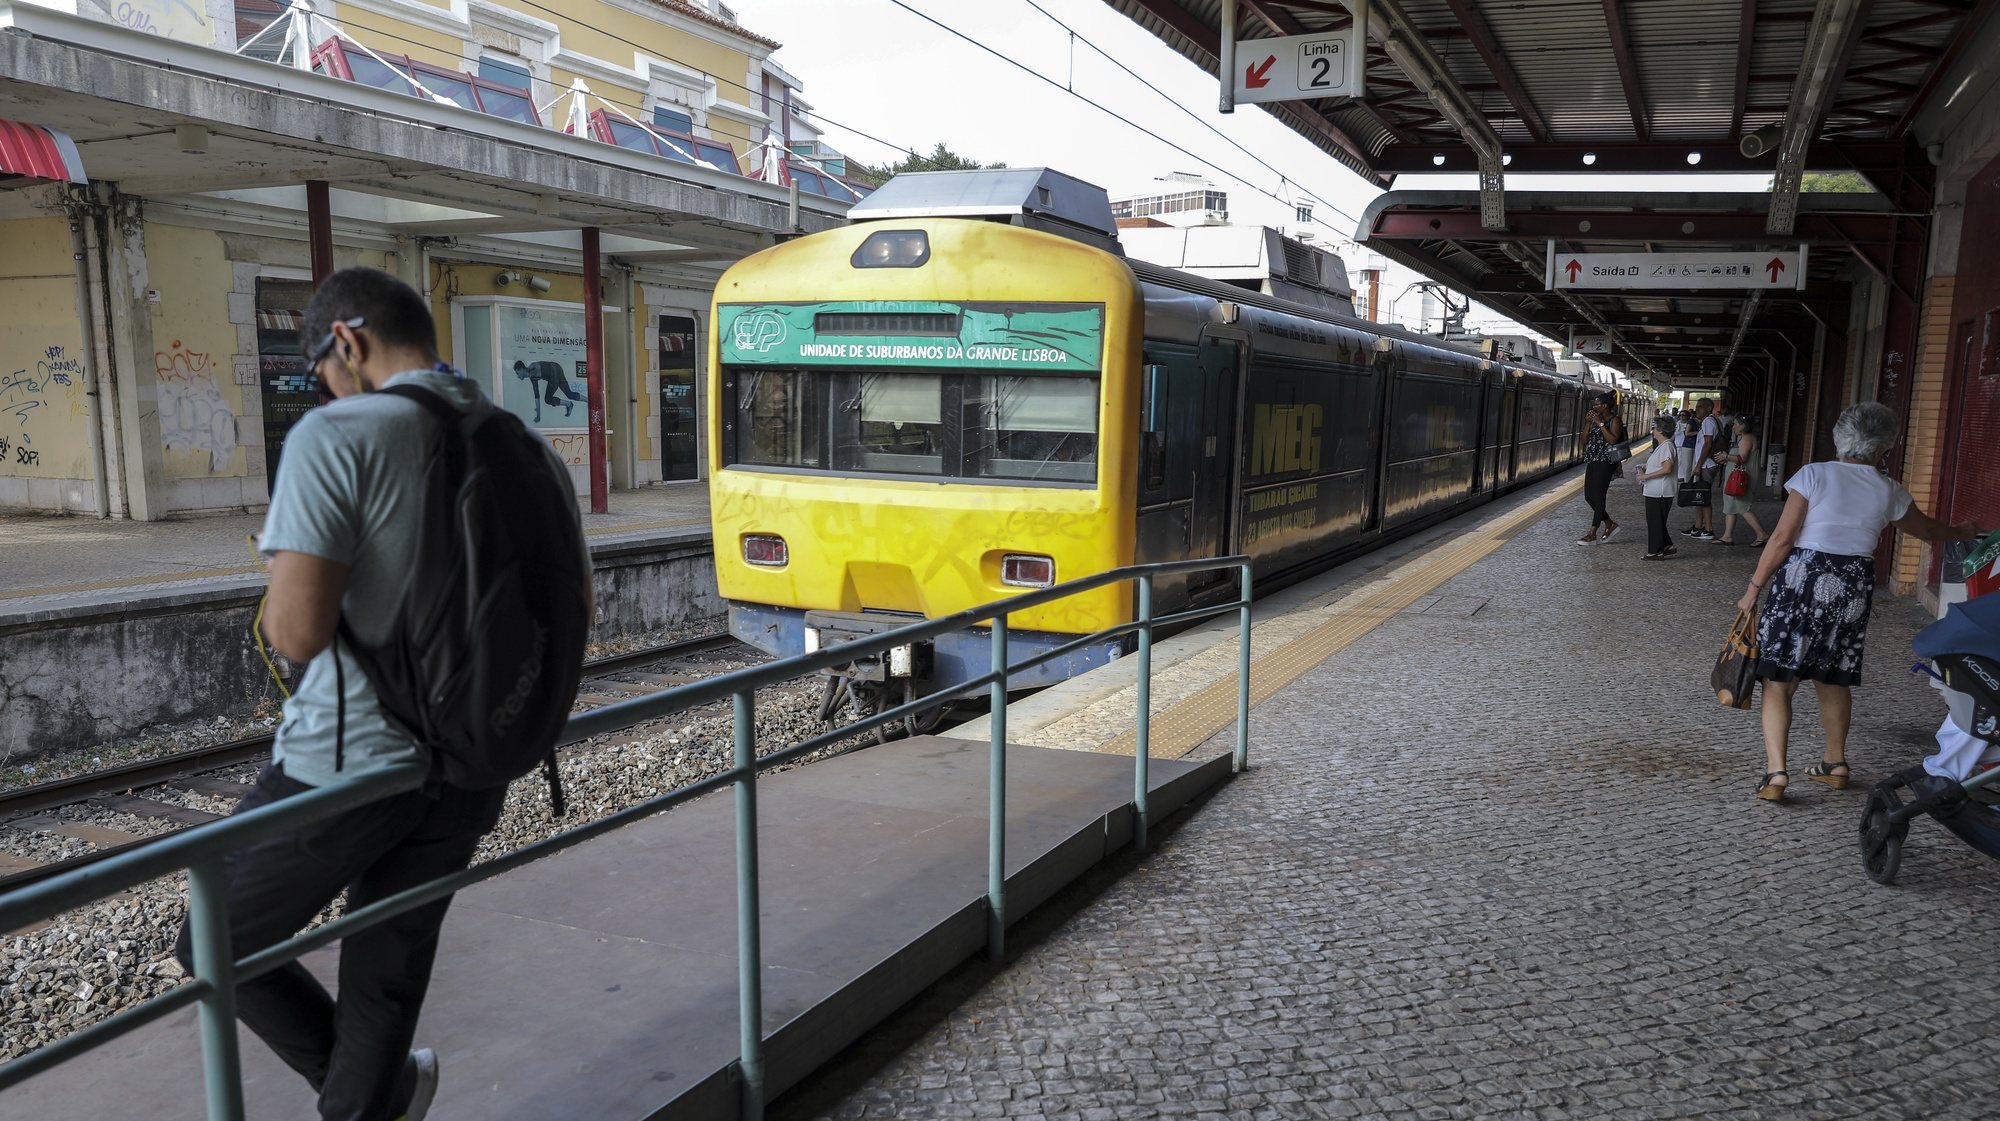 Os utilizadores da linha de Cascais apelam para que os horários sejam cumpridos e as estações e comboios modernizados, uma vez que a inexistência de alternativas de transporte público para o trajeto condiciona as deslocações entre Cascais e Lisboa, 21 de agosto de 2018. (ACOMPANHA TEXTO DE 27 DE AGOSTO DE 2018). MIGUEL A. LOPES/LUSA